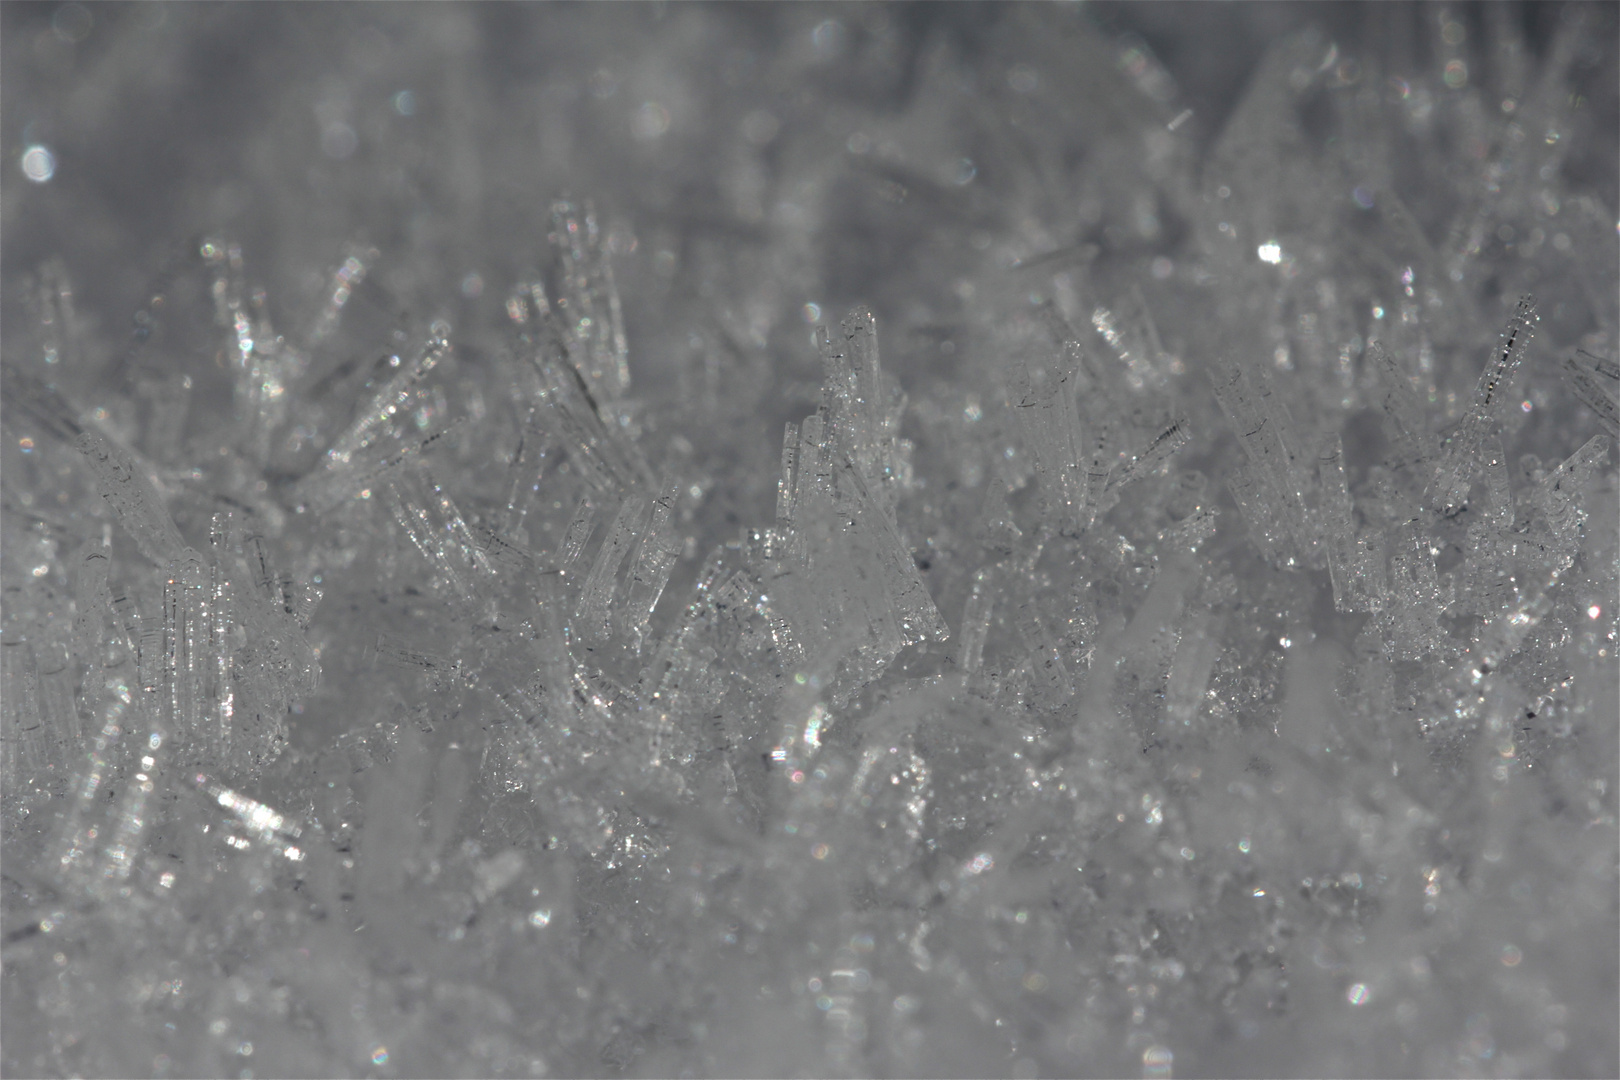 KRISTALLWELTEN - Es gibt sowohl längsgestreifte als auch quergebänderte Raureifkristalle